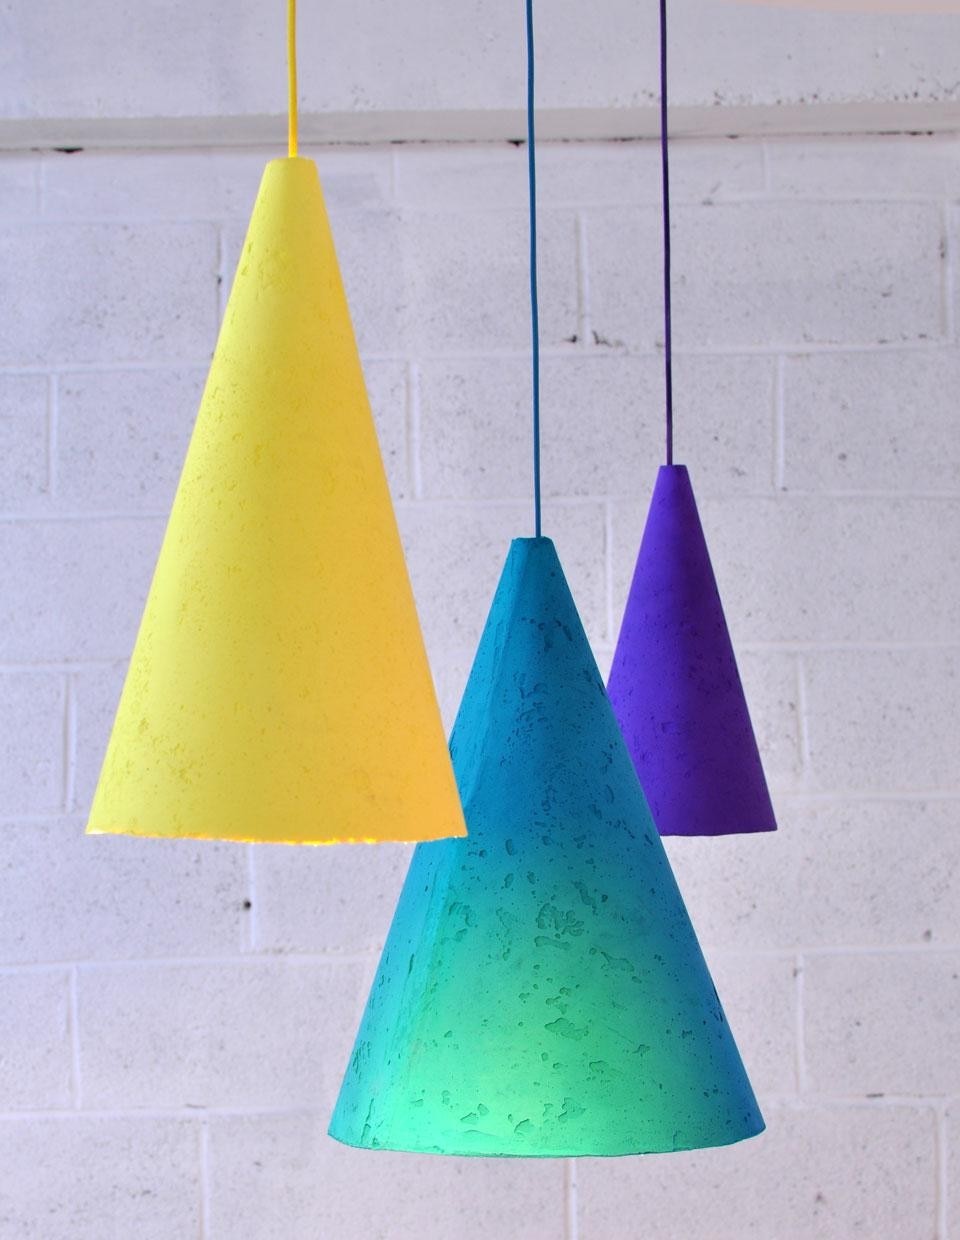 Studio Monsieur, Pigment Lamp, 2013